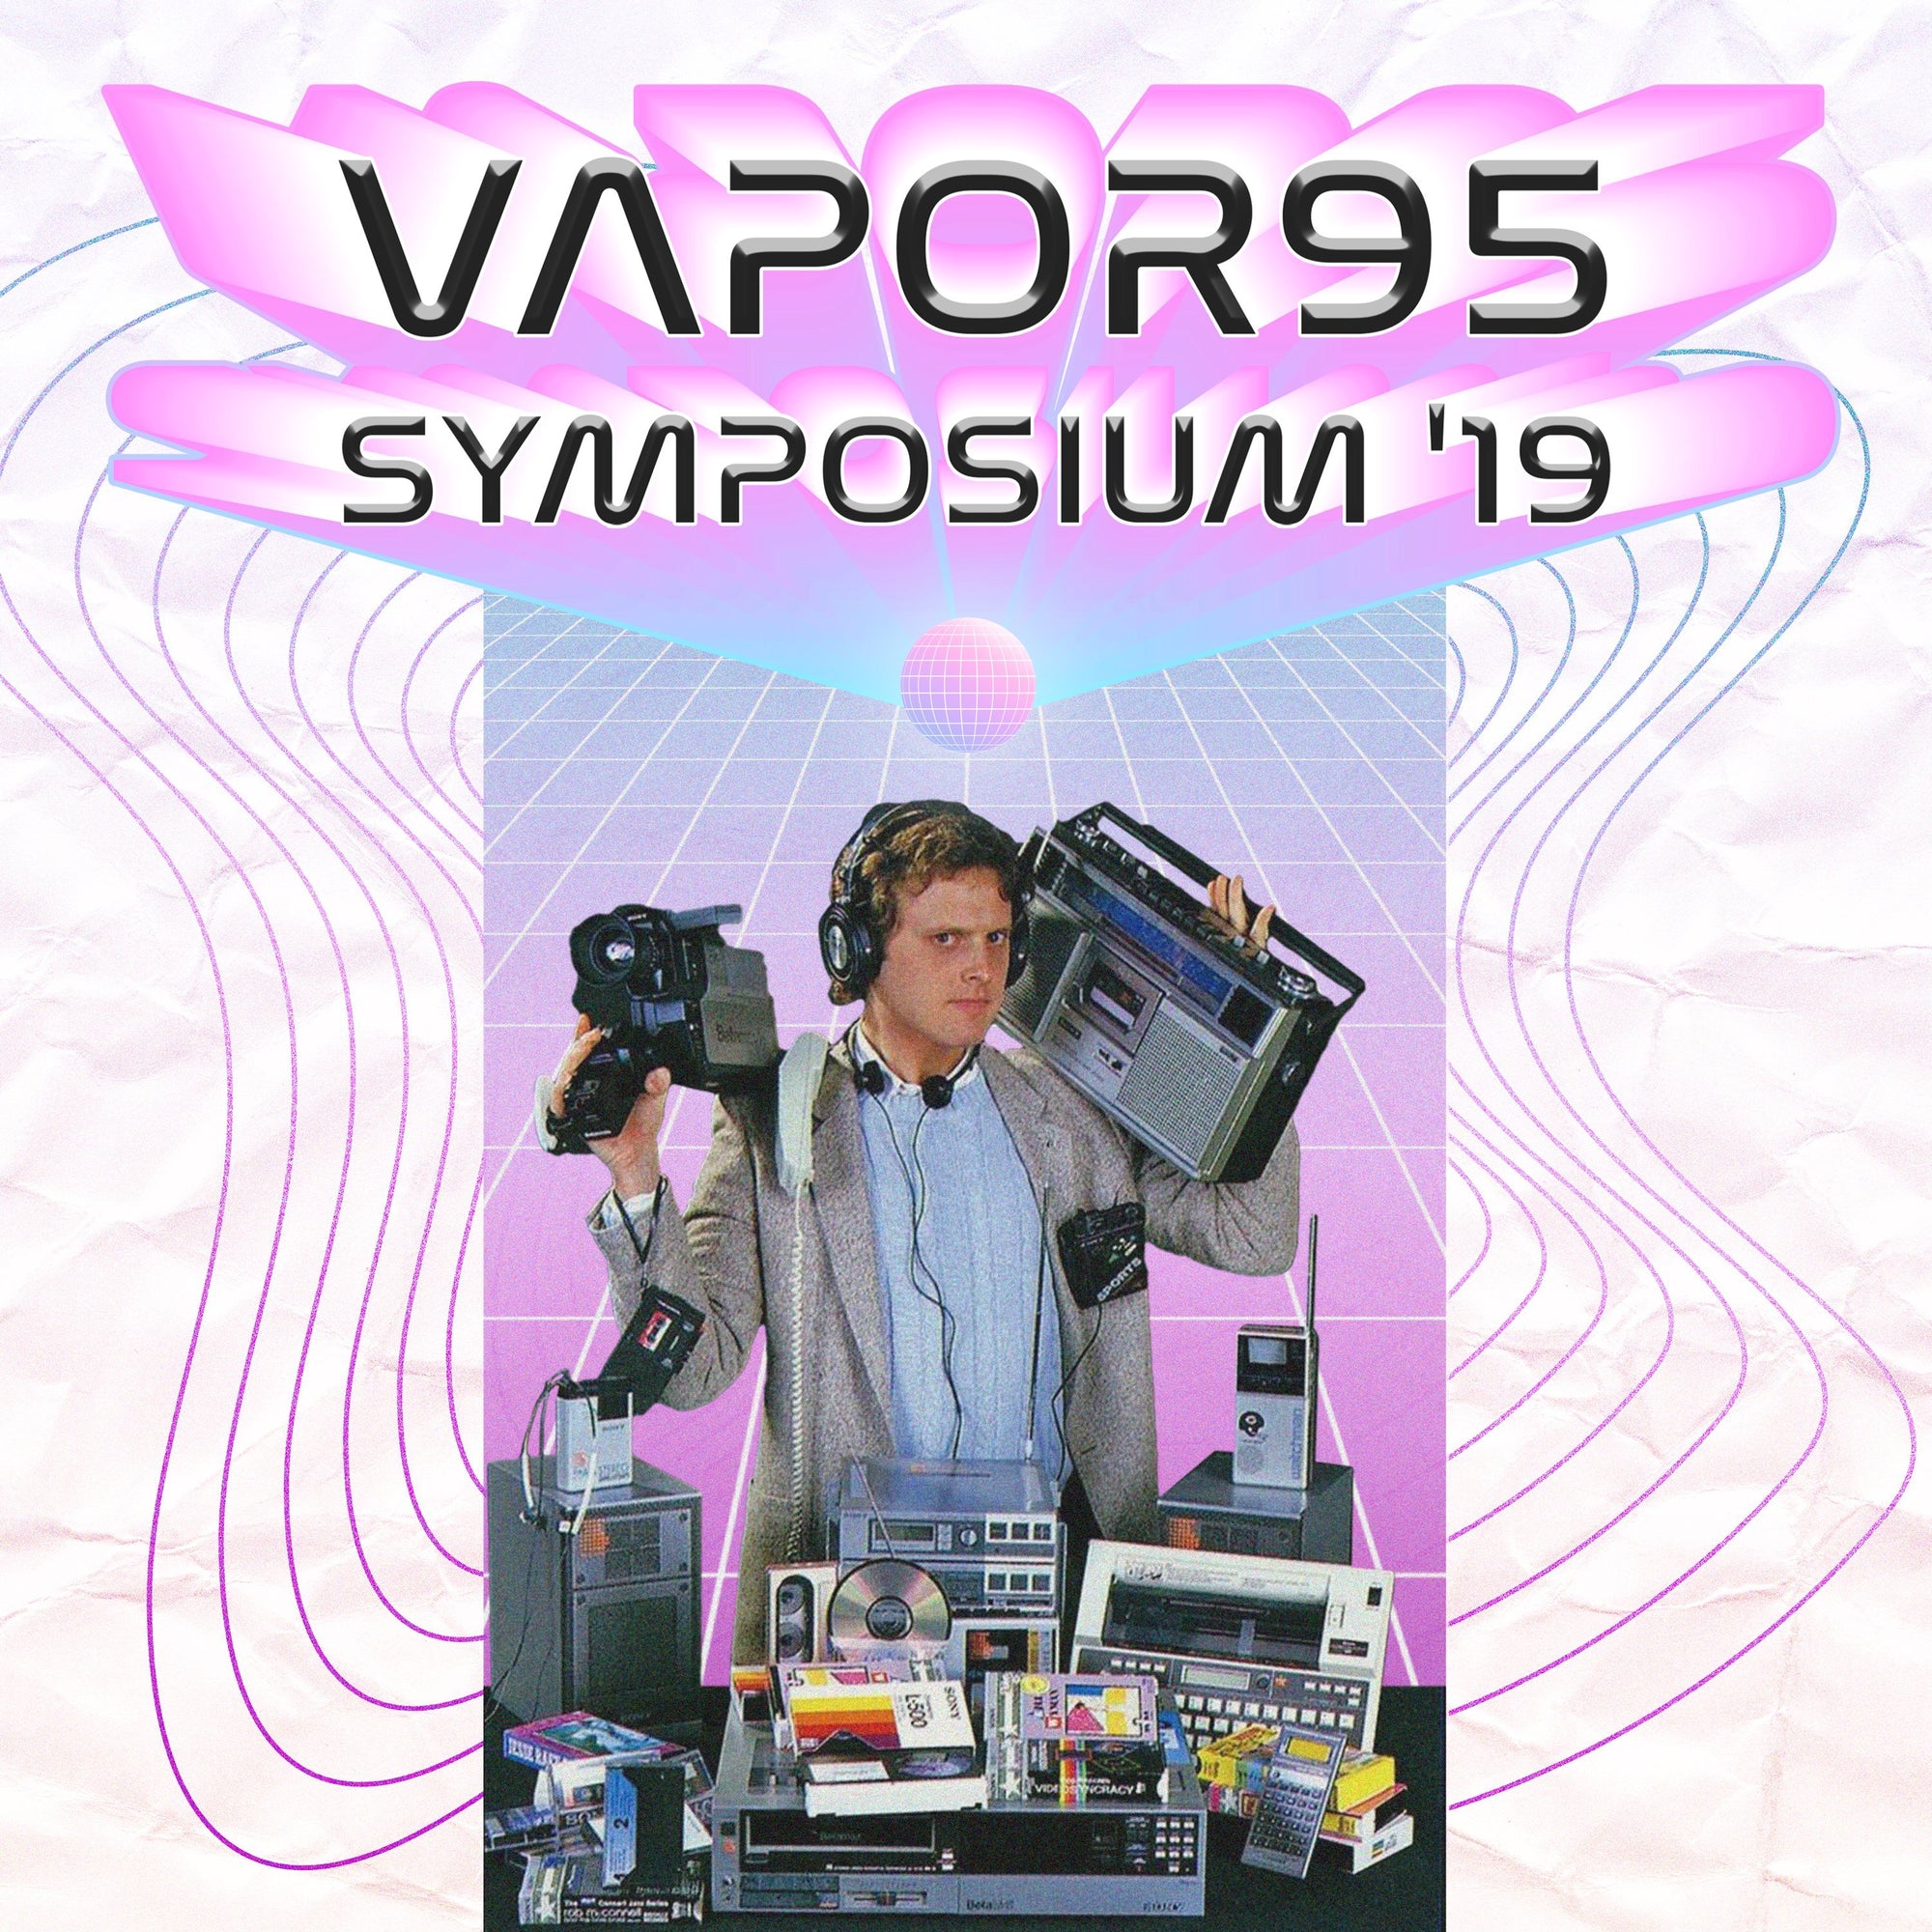 Vapor95 Symposium 2019 Recap